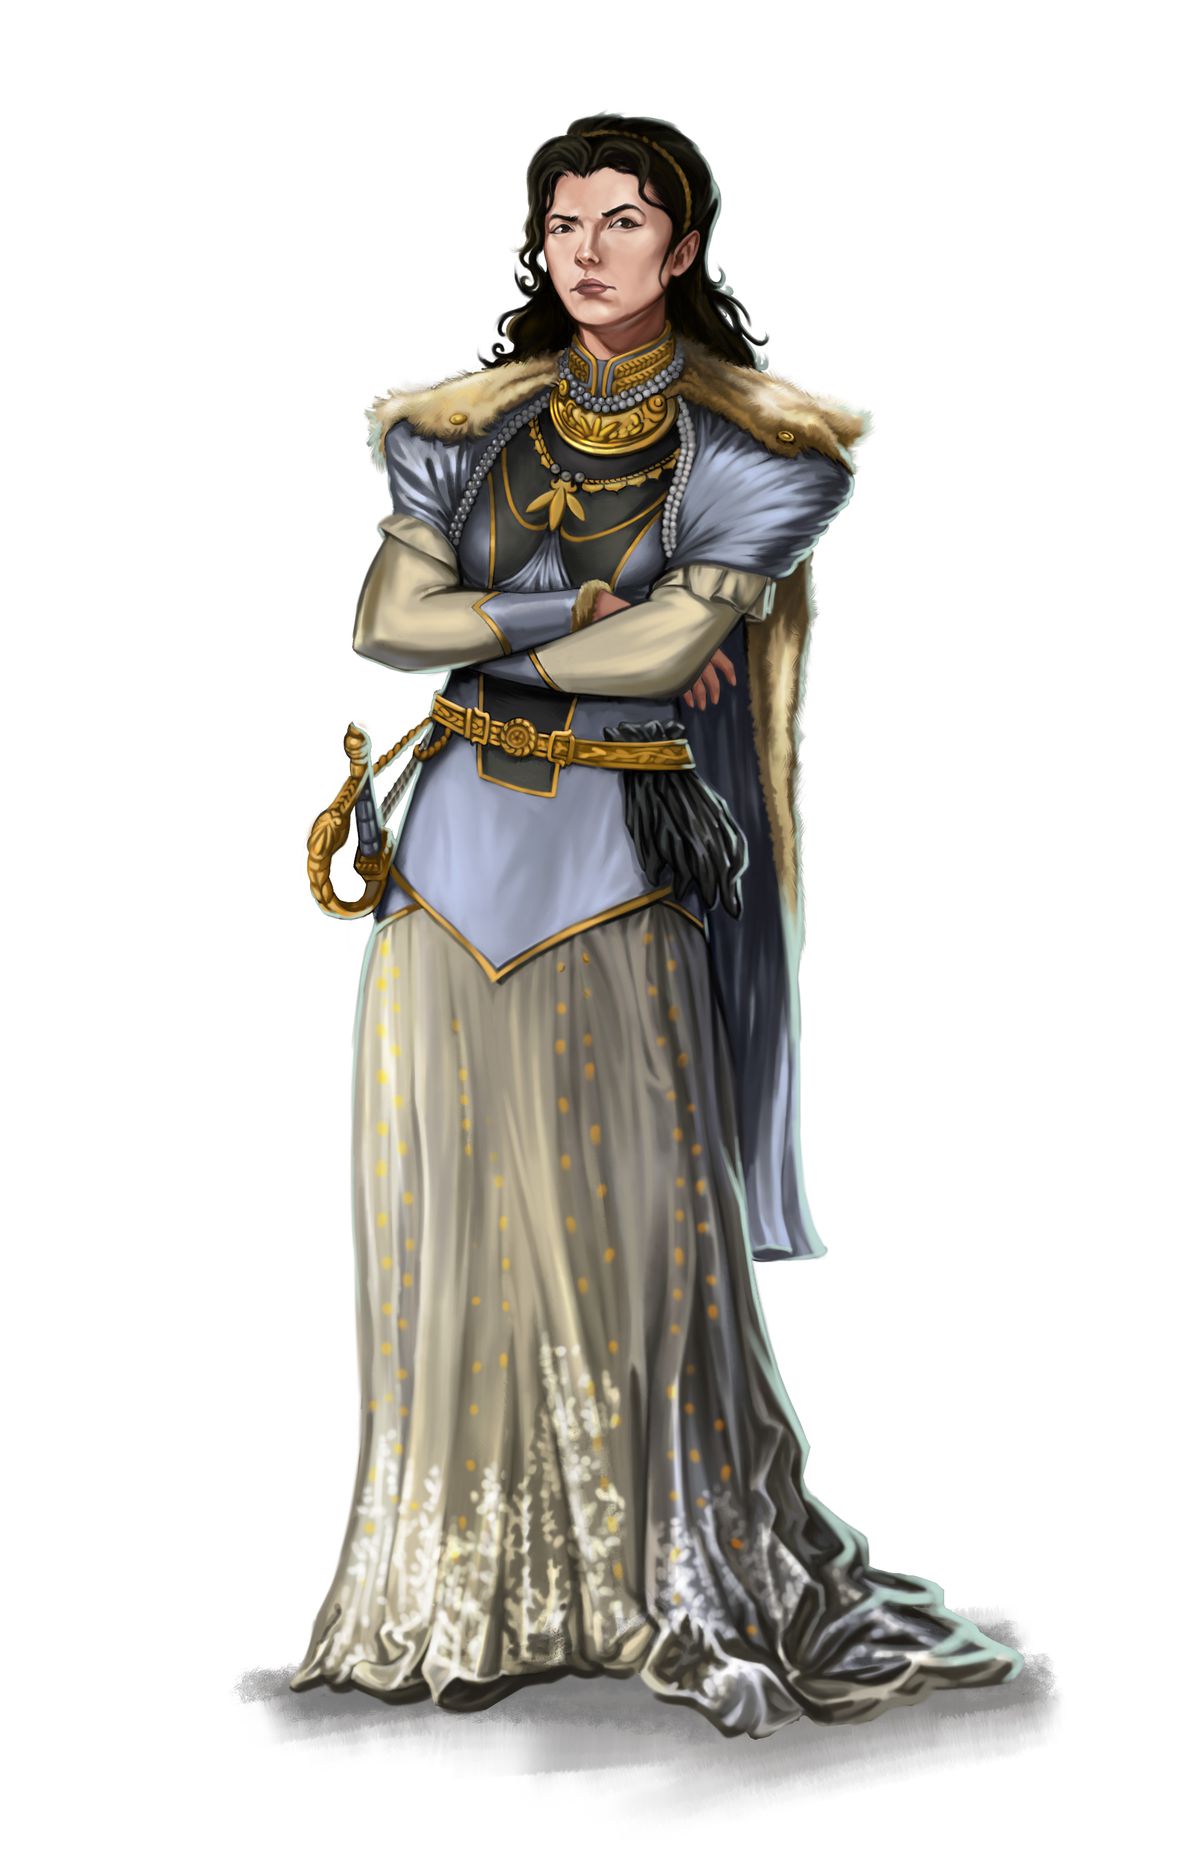 Una donna con un vestito fluido, l'accenno di una gorgiera dorata alla gola sotto un alto colletto militare.  Indossa un mantello di pelliccia e una spada al fianco.